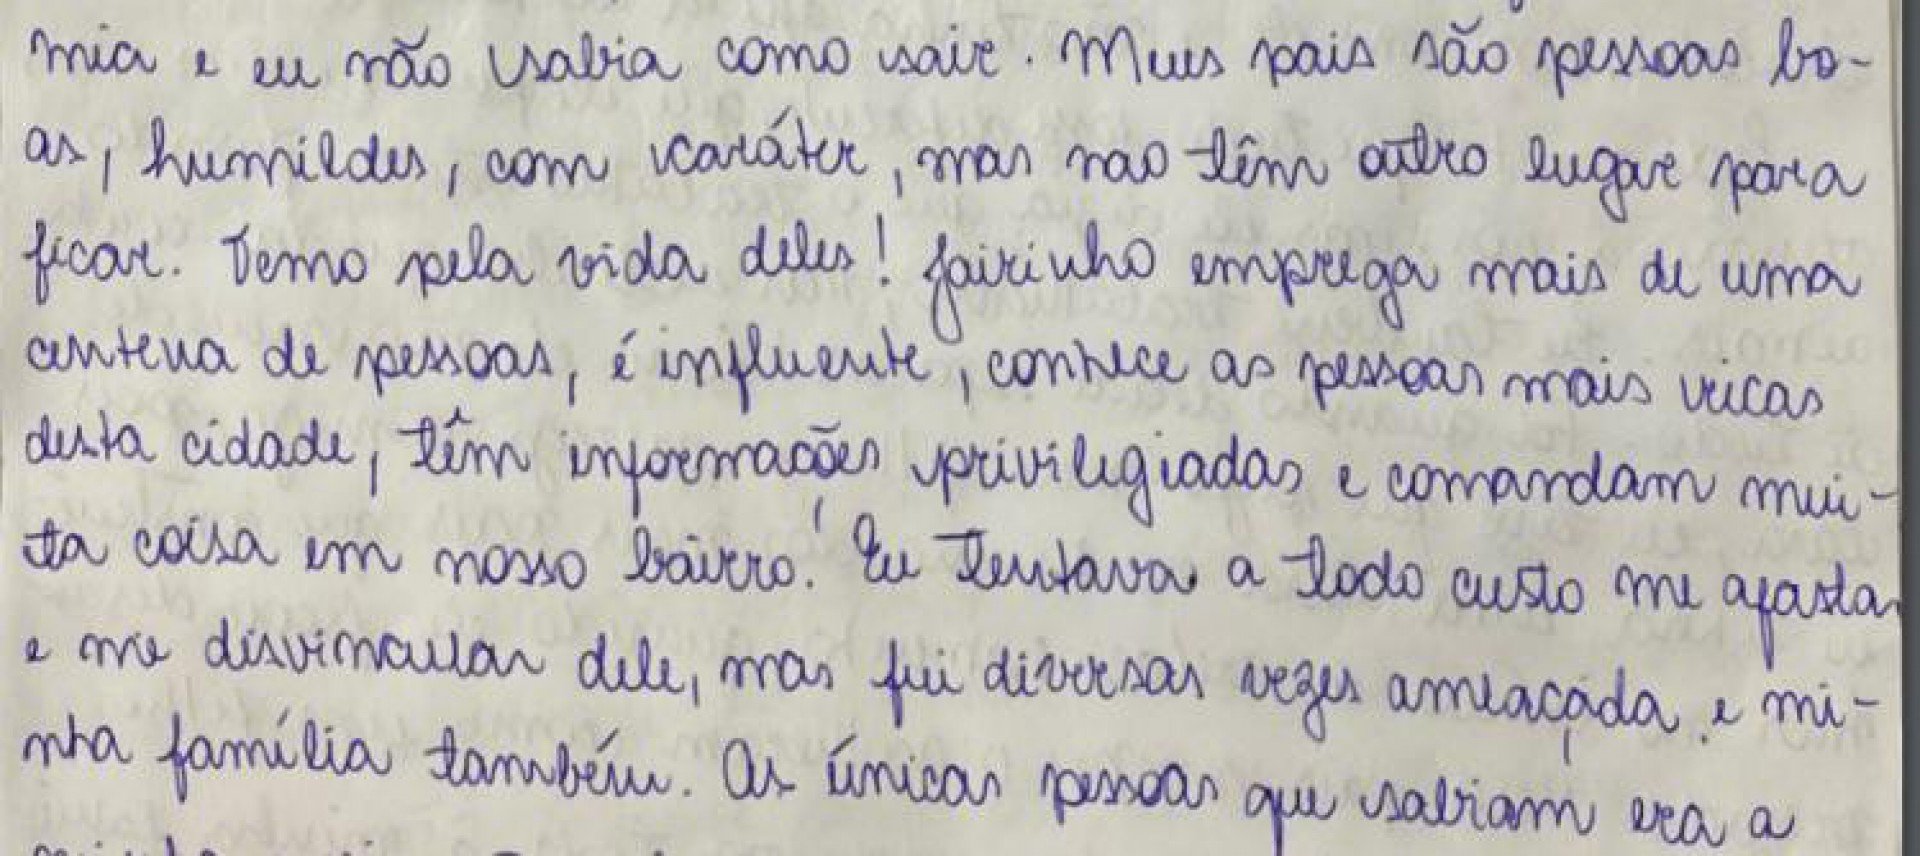 Na cadeia, Monique Medeiros escreveu carta de 29 páginas em que afirma que teme pela vida dos pais, por Jairinho ser uma pessoa muito influente  - Divulgação 